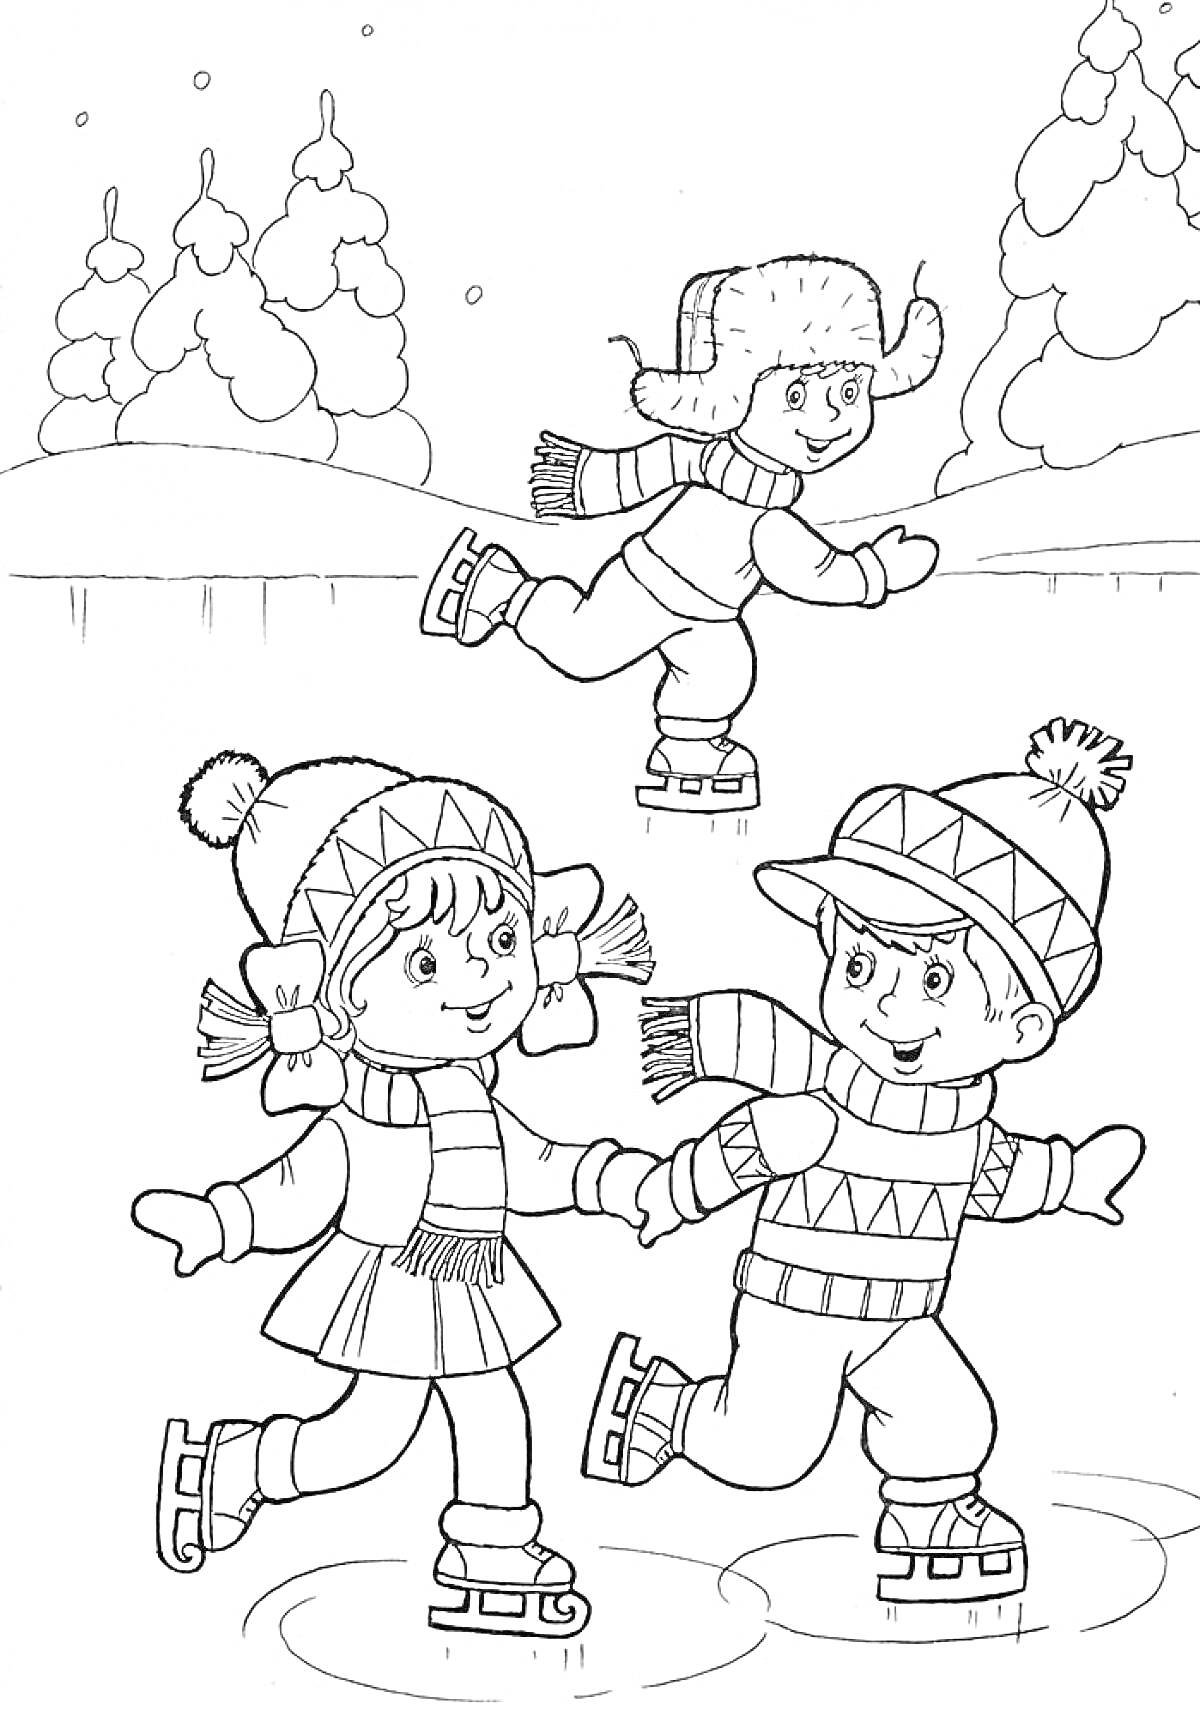 Дети катаются на коньках, зимний лес на заднем плане